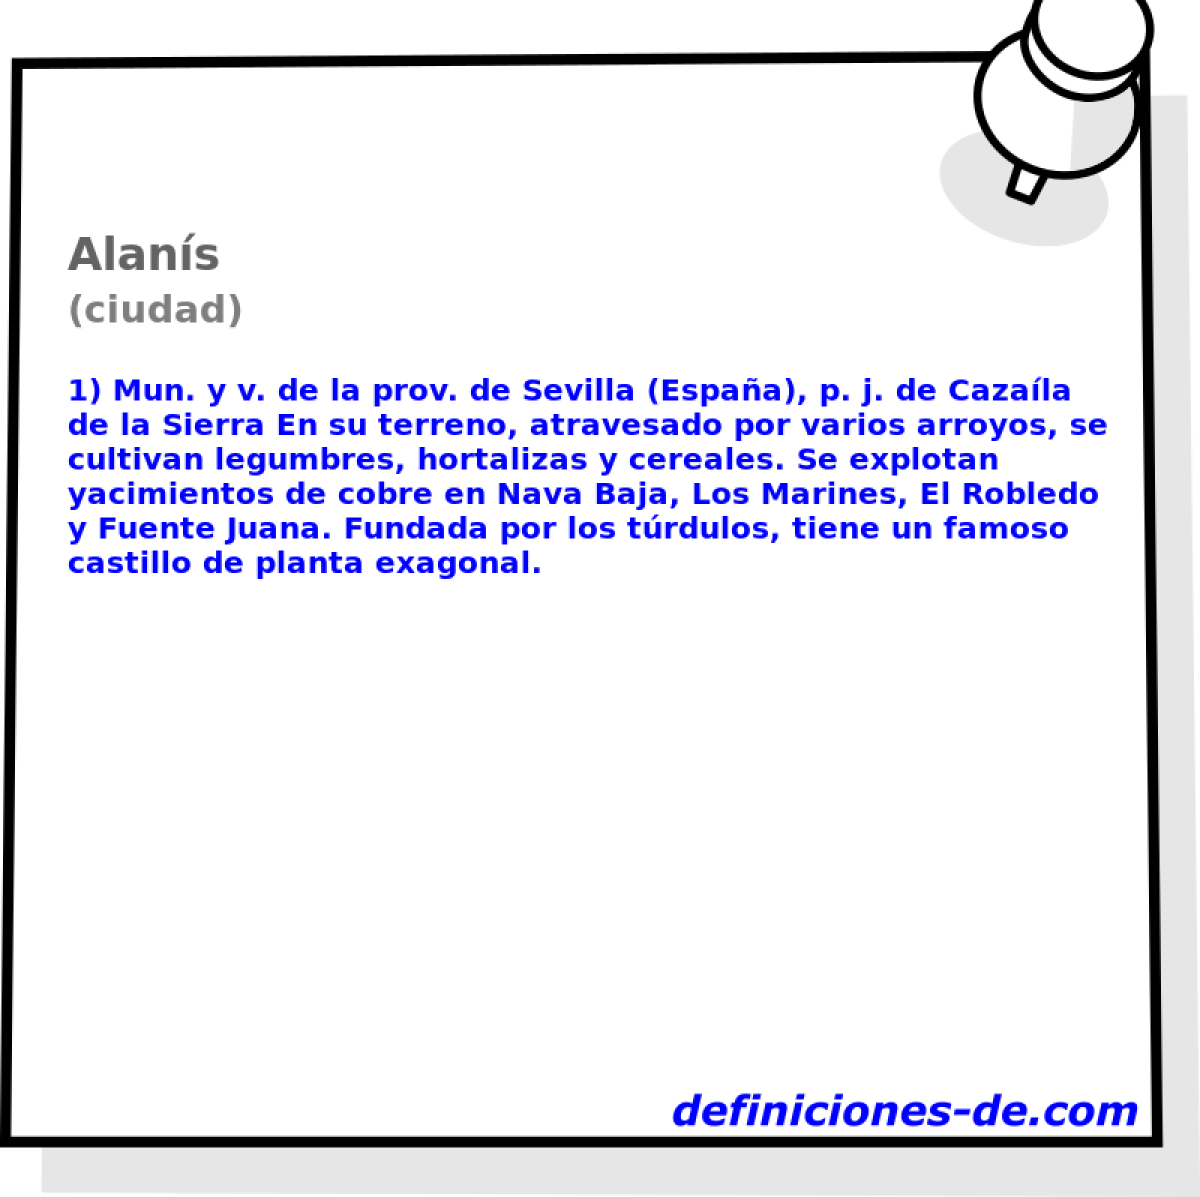 Alans (ciudad)